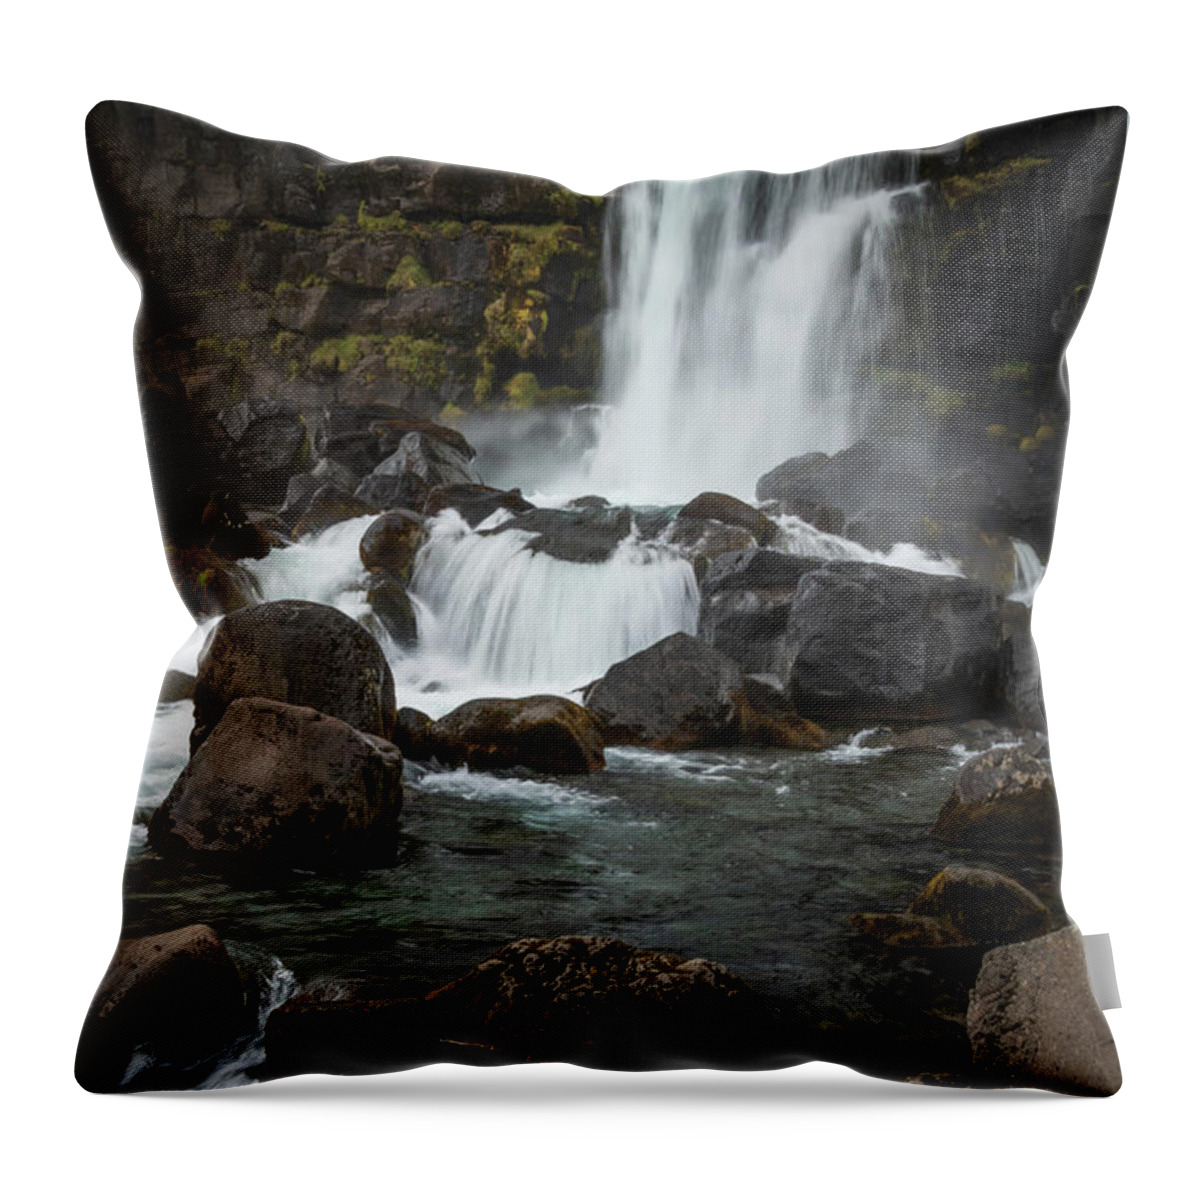 Landscape Throw Pillow featuring the photograph Oxararfoss Cascade by Kristia Adams